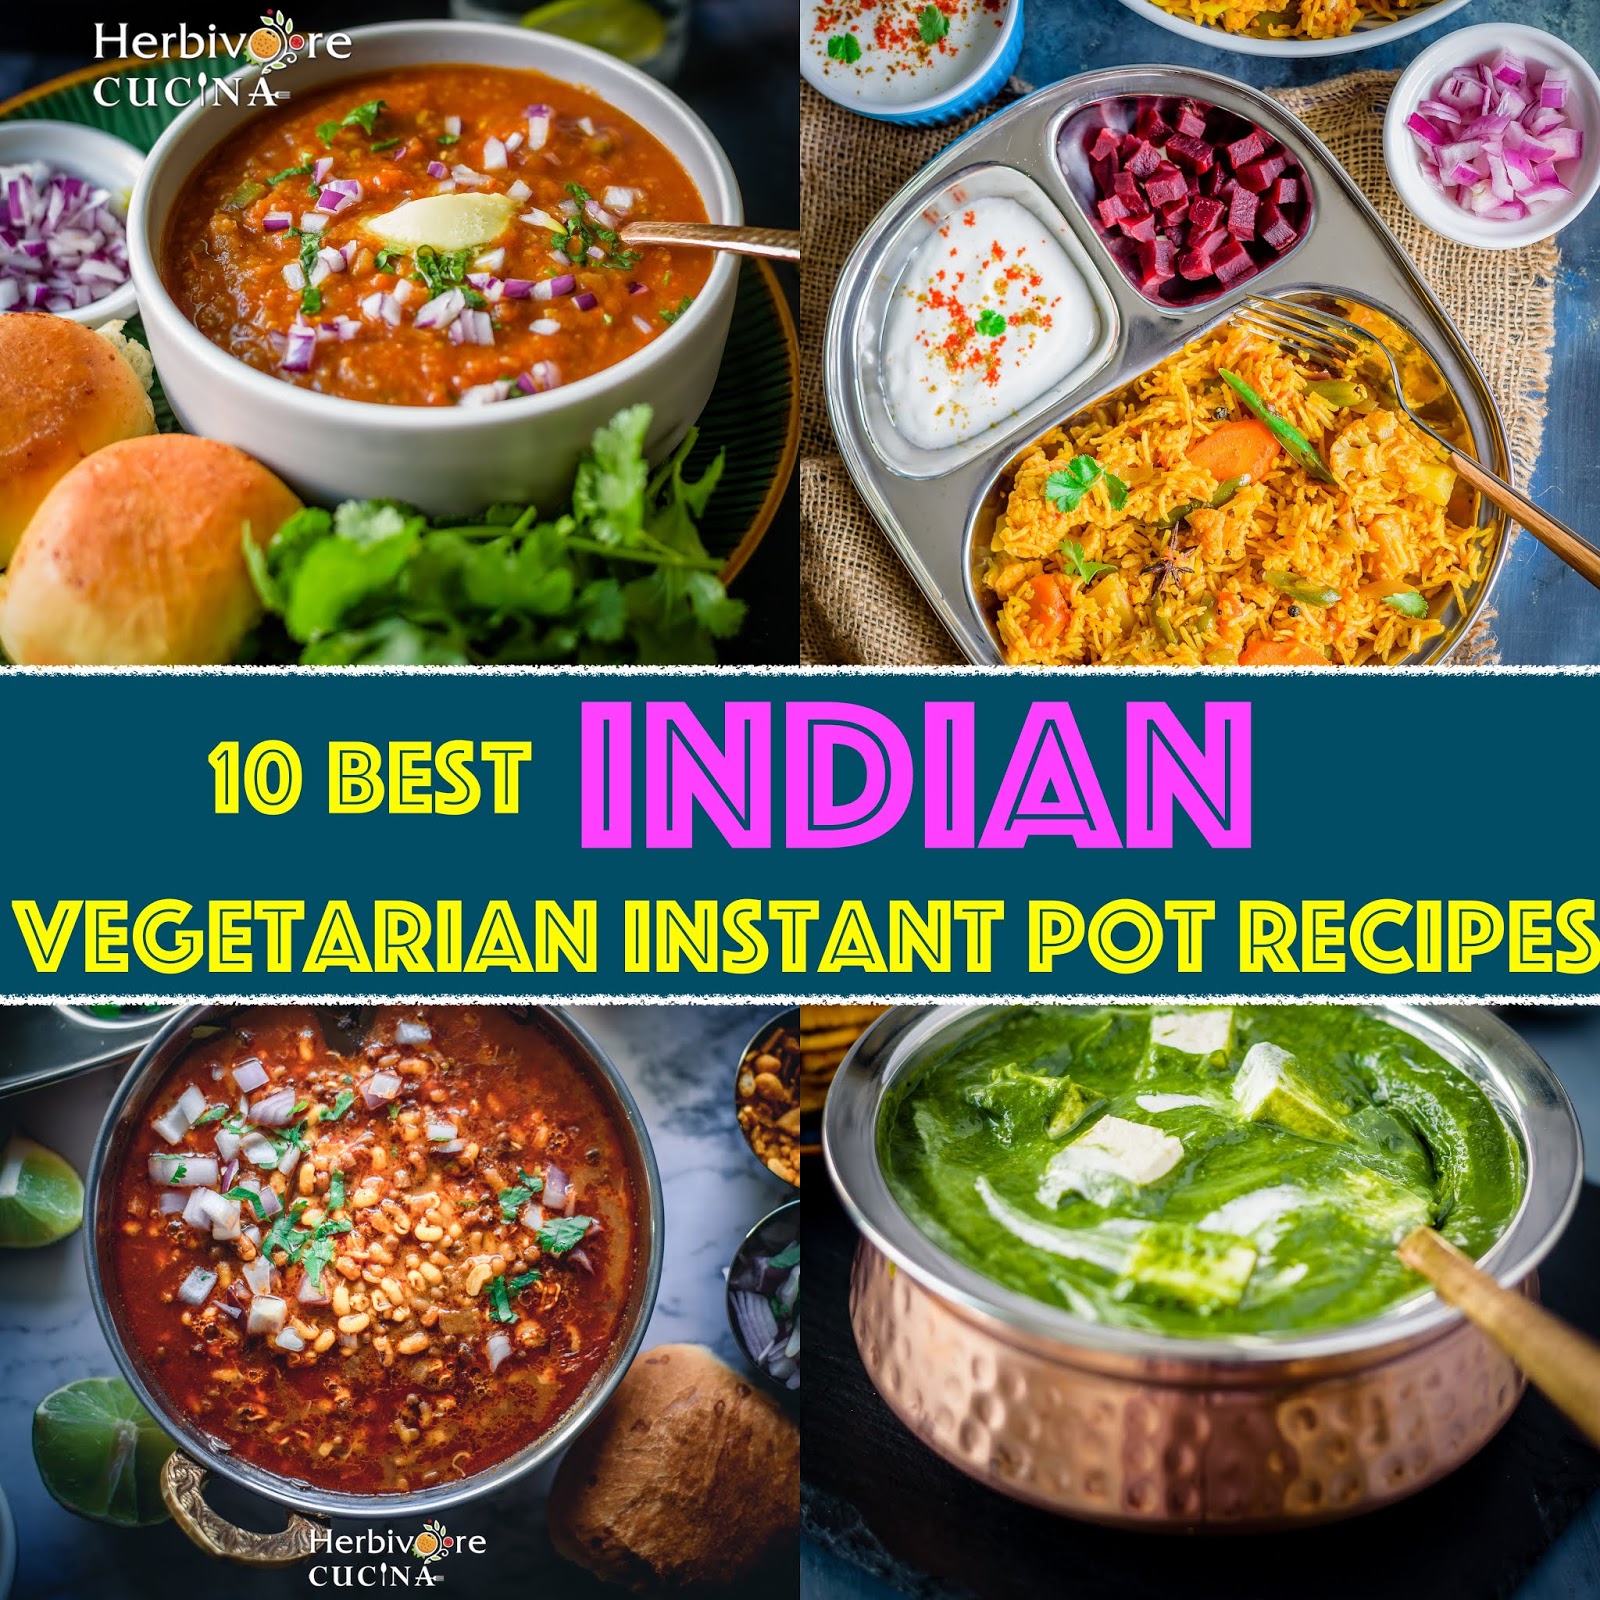 Instant Pot Vegetarian Indian Recipes - Find Vegetarian Recipes